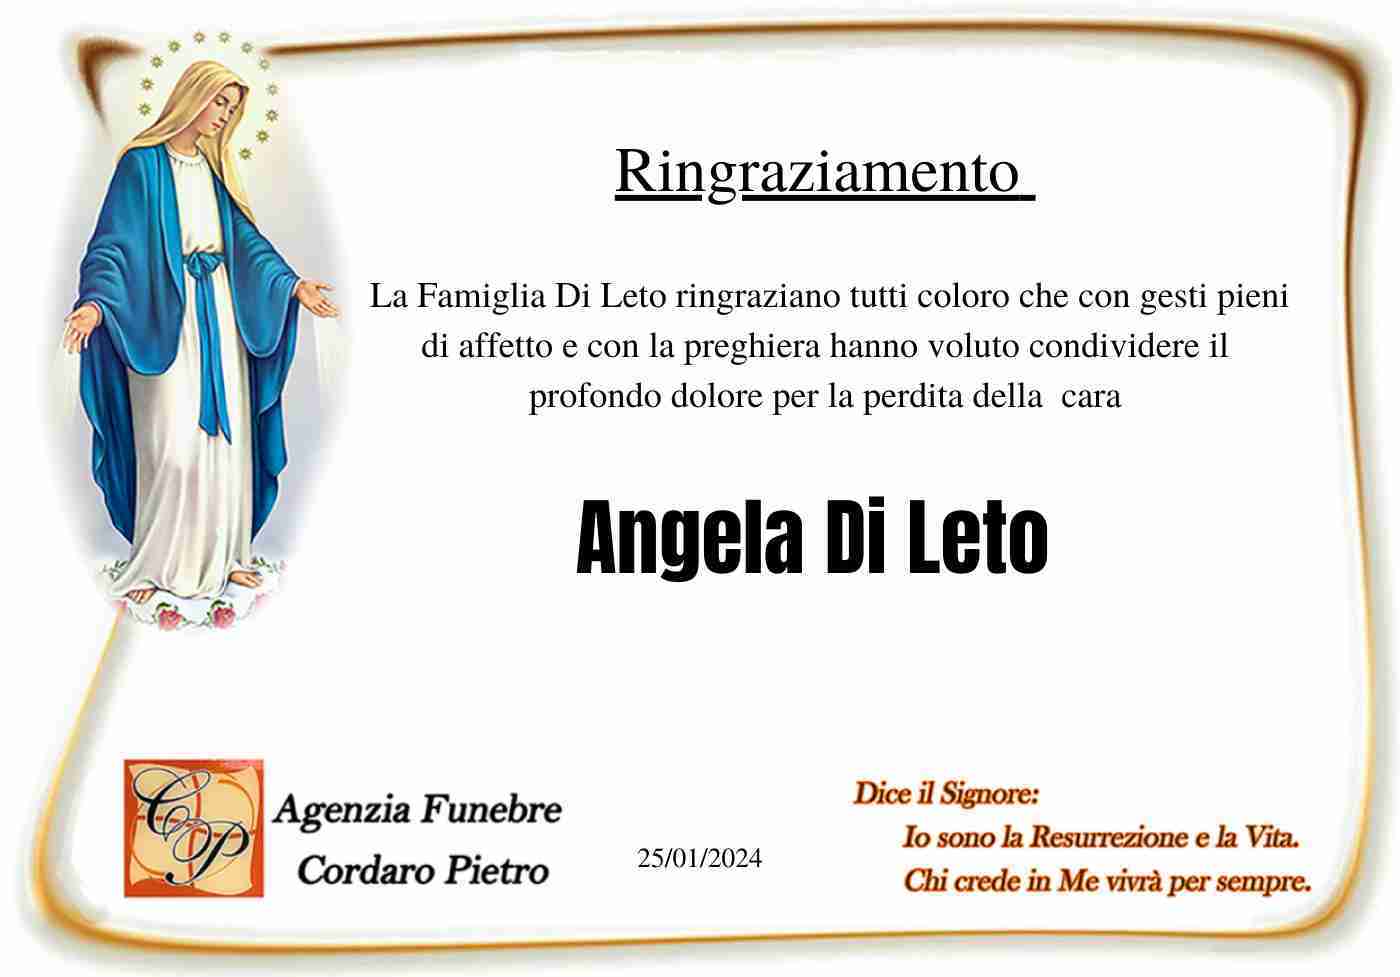 Angela Di Leto